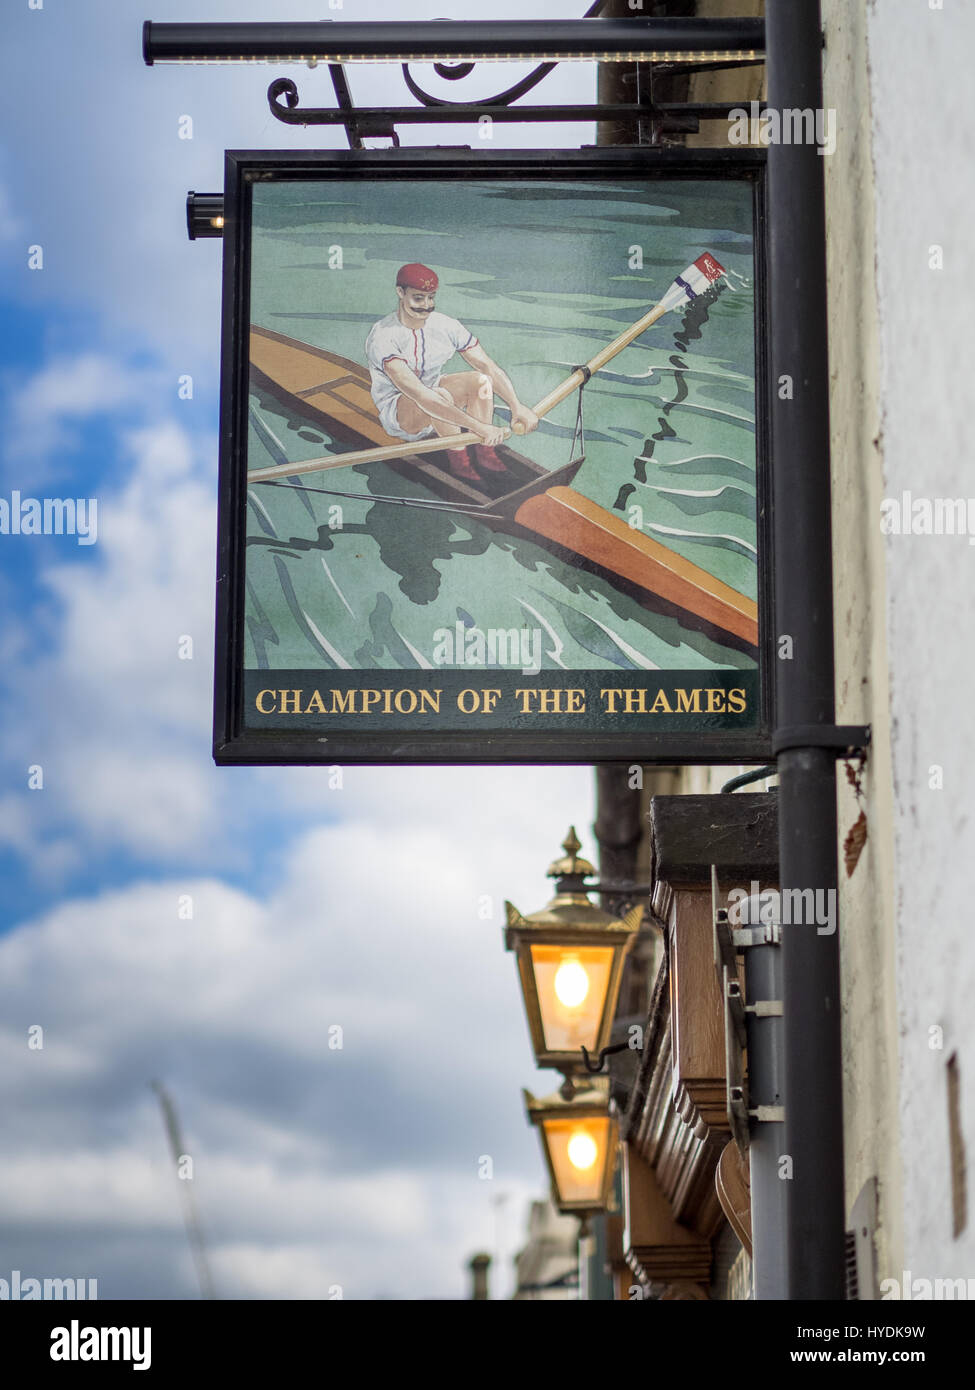 Zeichen für den Champion von der Themse Pub in King Street Cambridge. Benannt nach einem c19 Thames Rennen gewinnen Ruderer, die gebeten, mit diesem Namen bezeichnet werden. Stockfoto